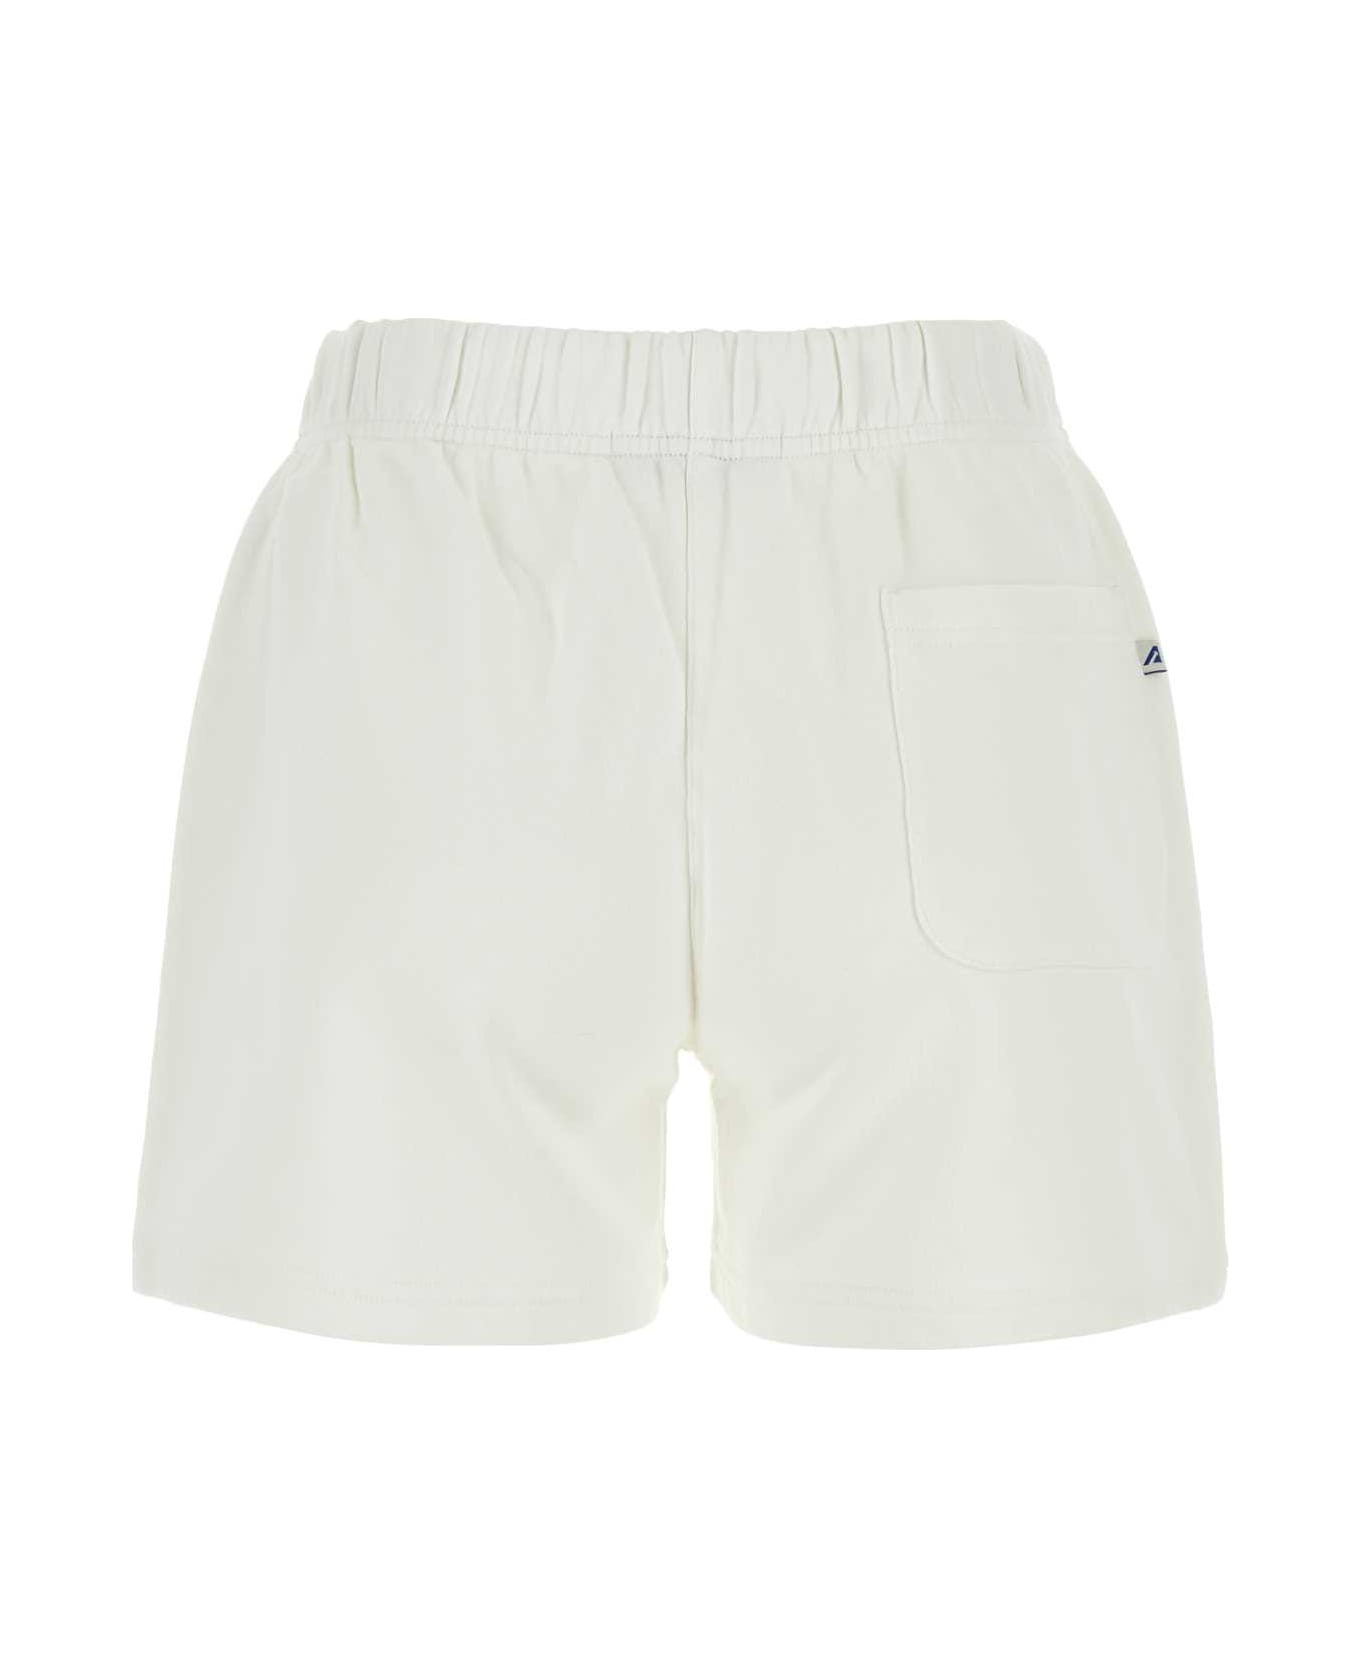 Autry White Cotton Shorts - 513W